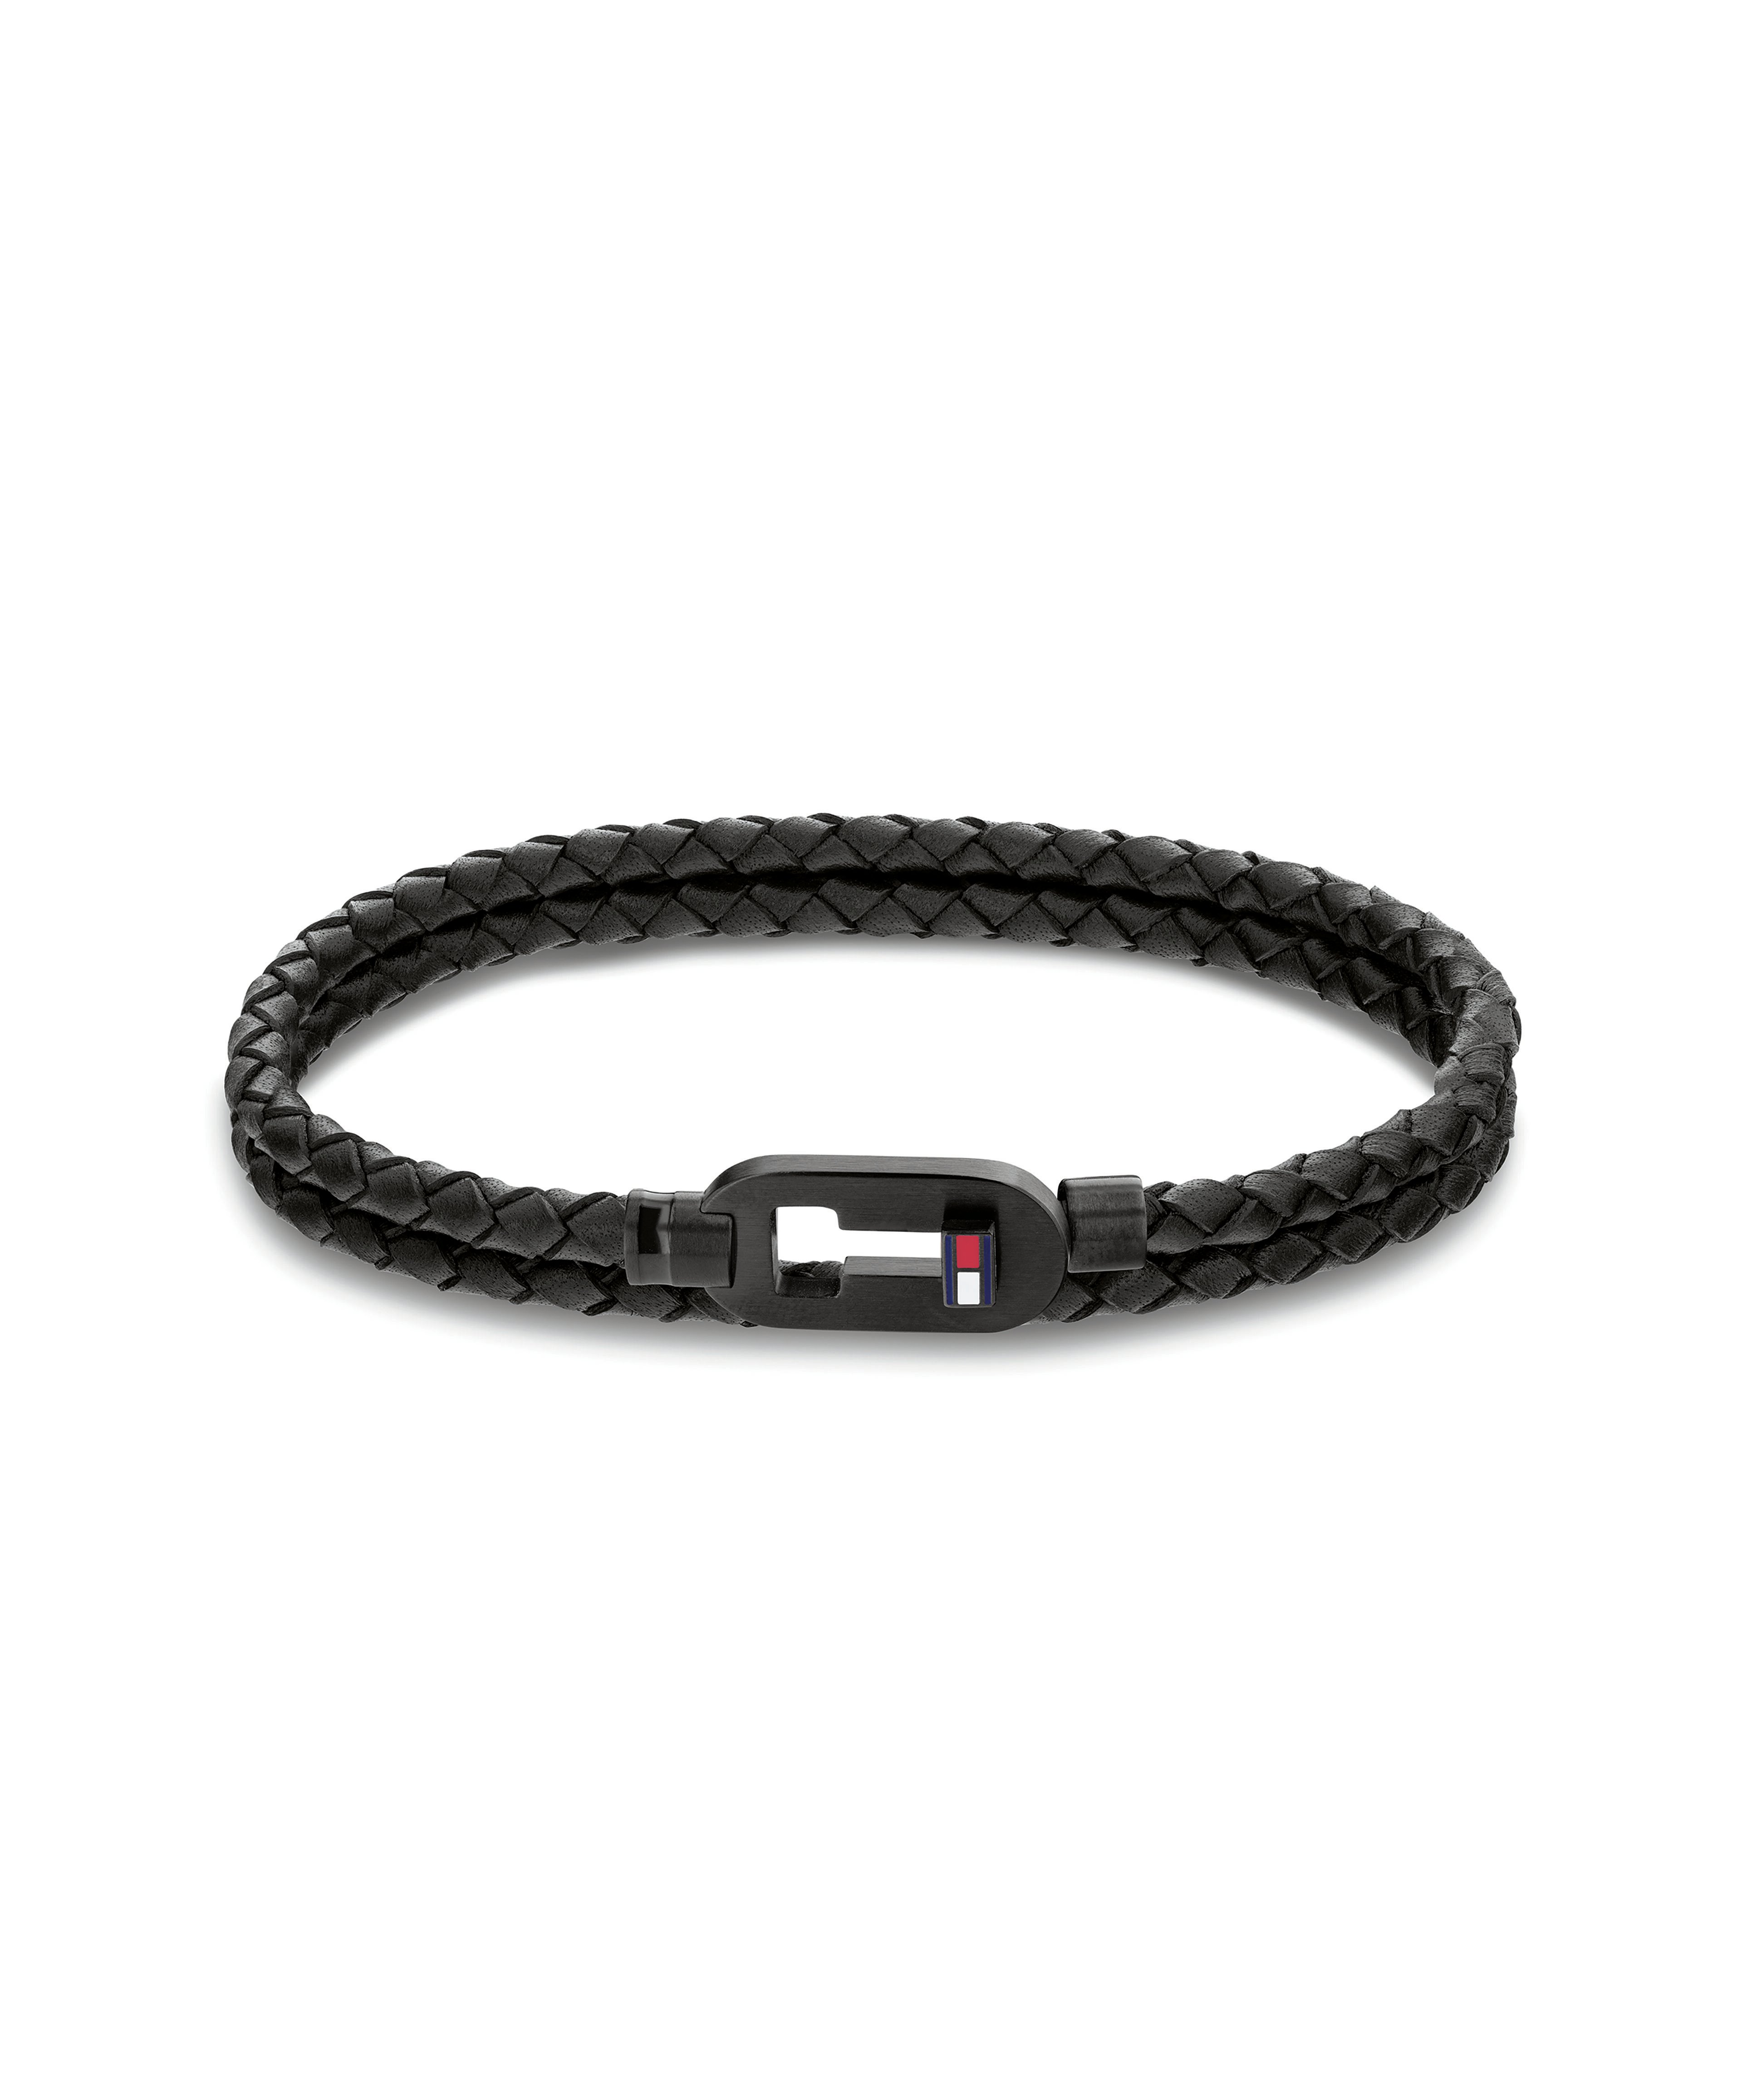 Tommy Hilfiger | Movado Company Store | Tommy Hilfiger Men's Bracelet